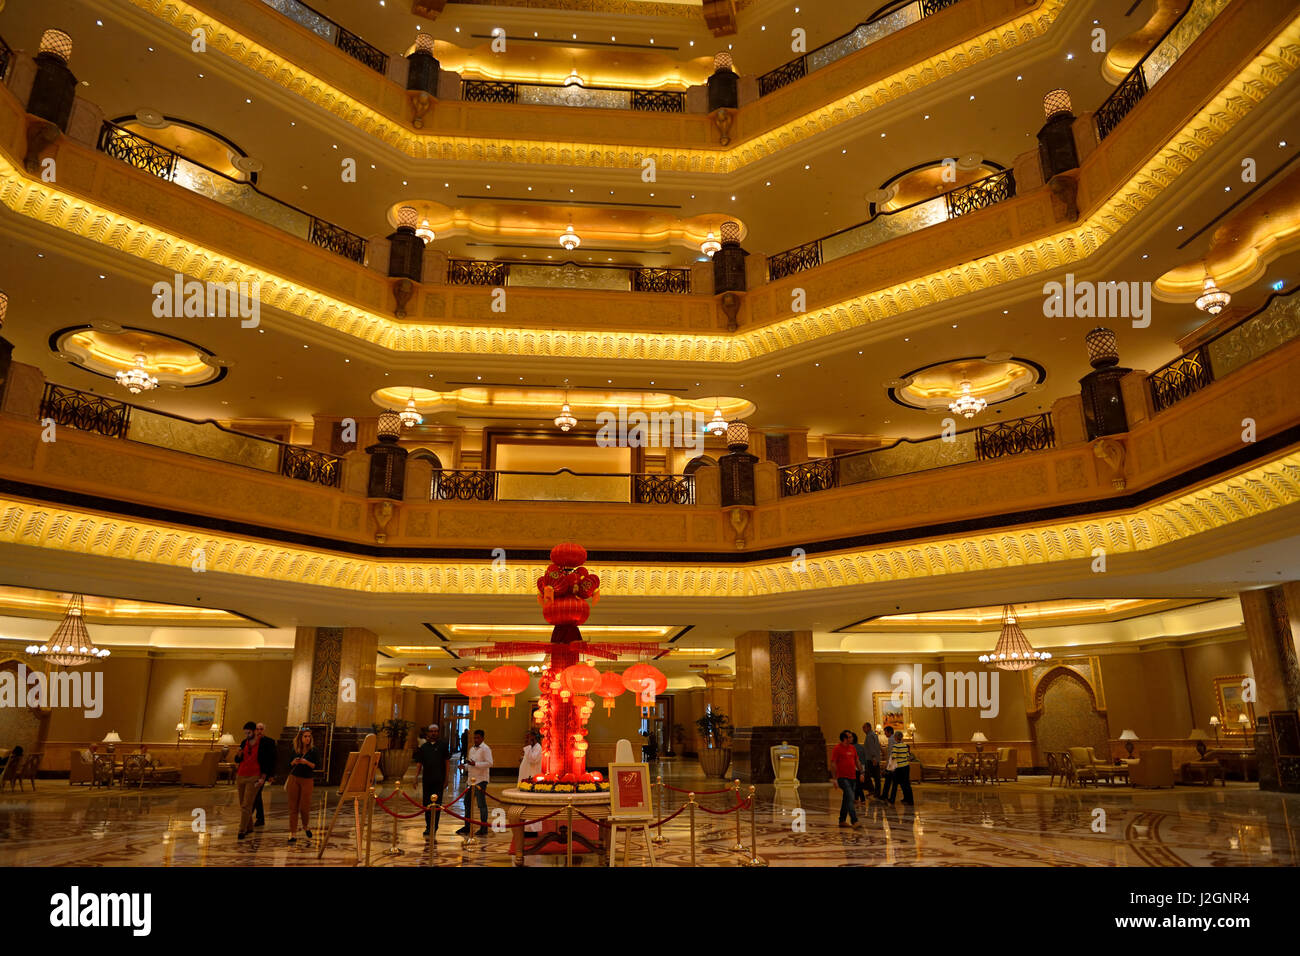 Interior of Emirates Palace Hotel Abu Dhabi, United Arab Emirates, Middle East Stock Photo